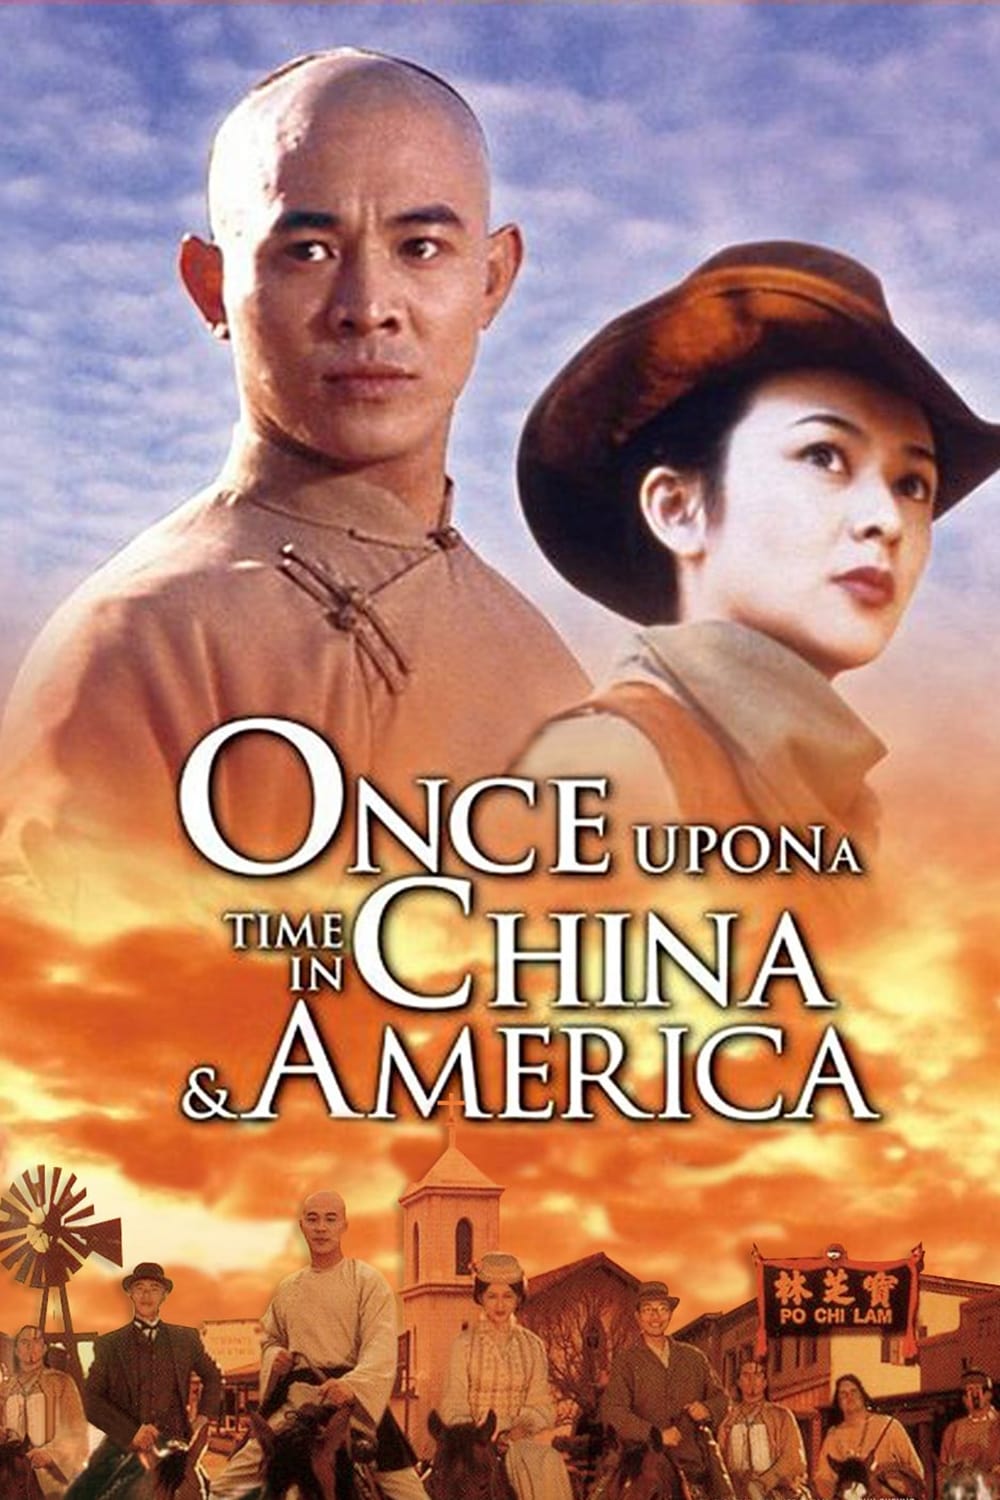 Hoàng Phi Hồng: Tây Vực Hùng Sư – Once Upon a Time in China and America (1997) Full HD Vietsub